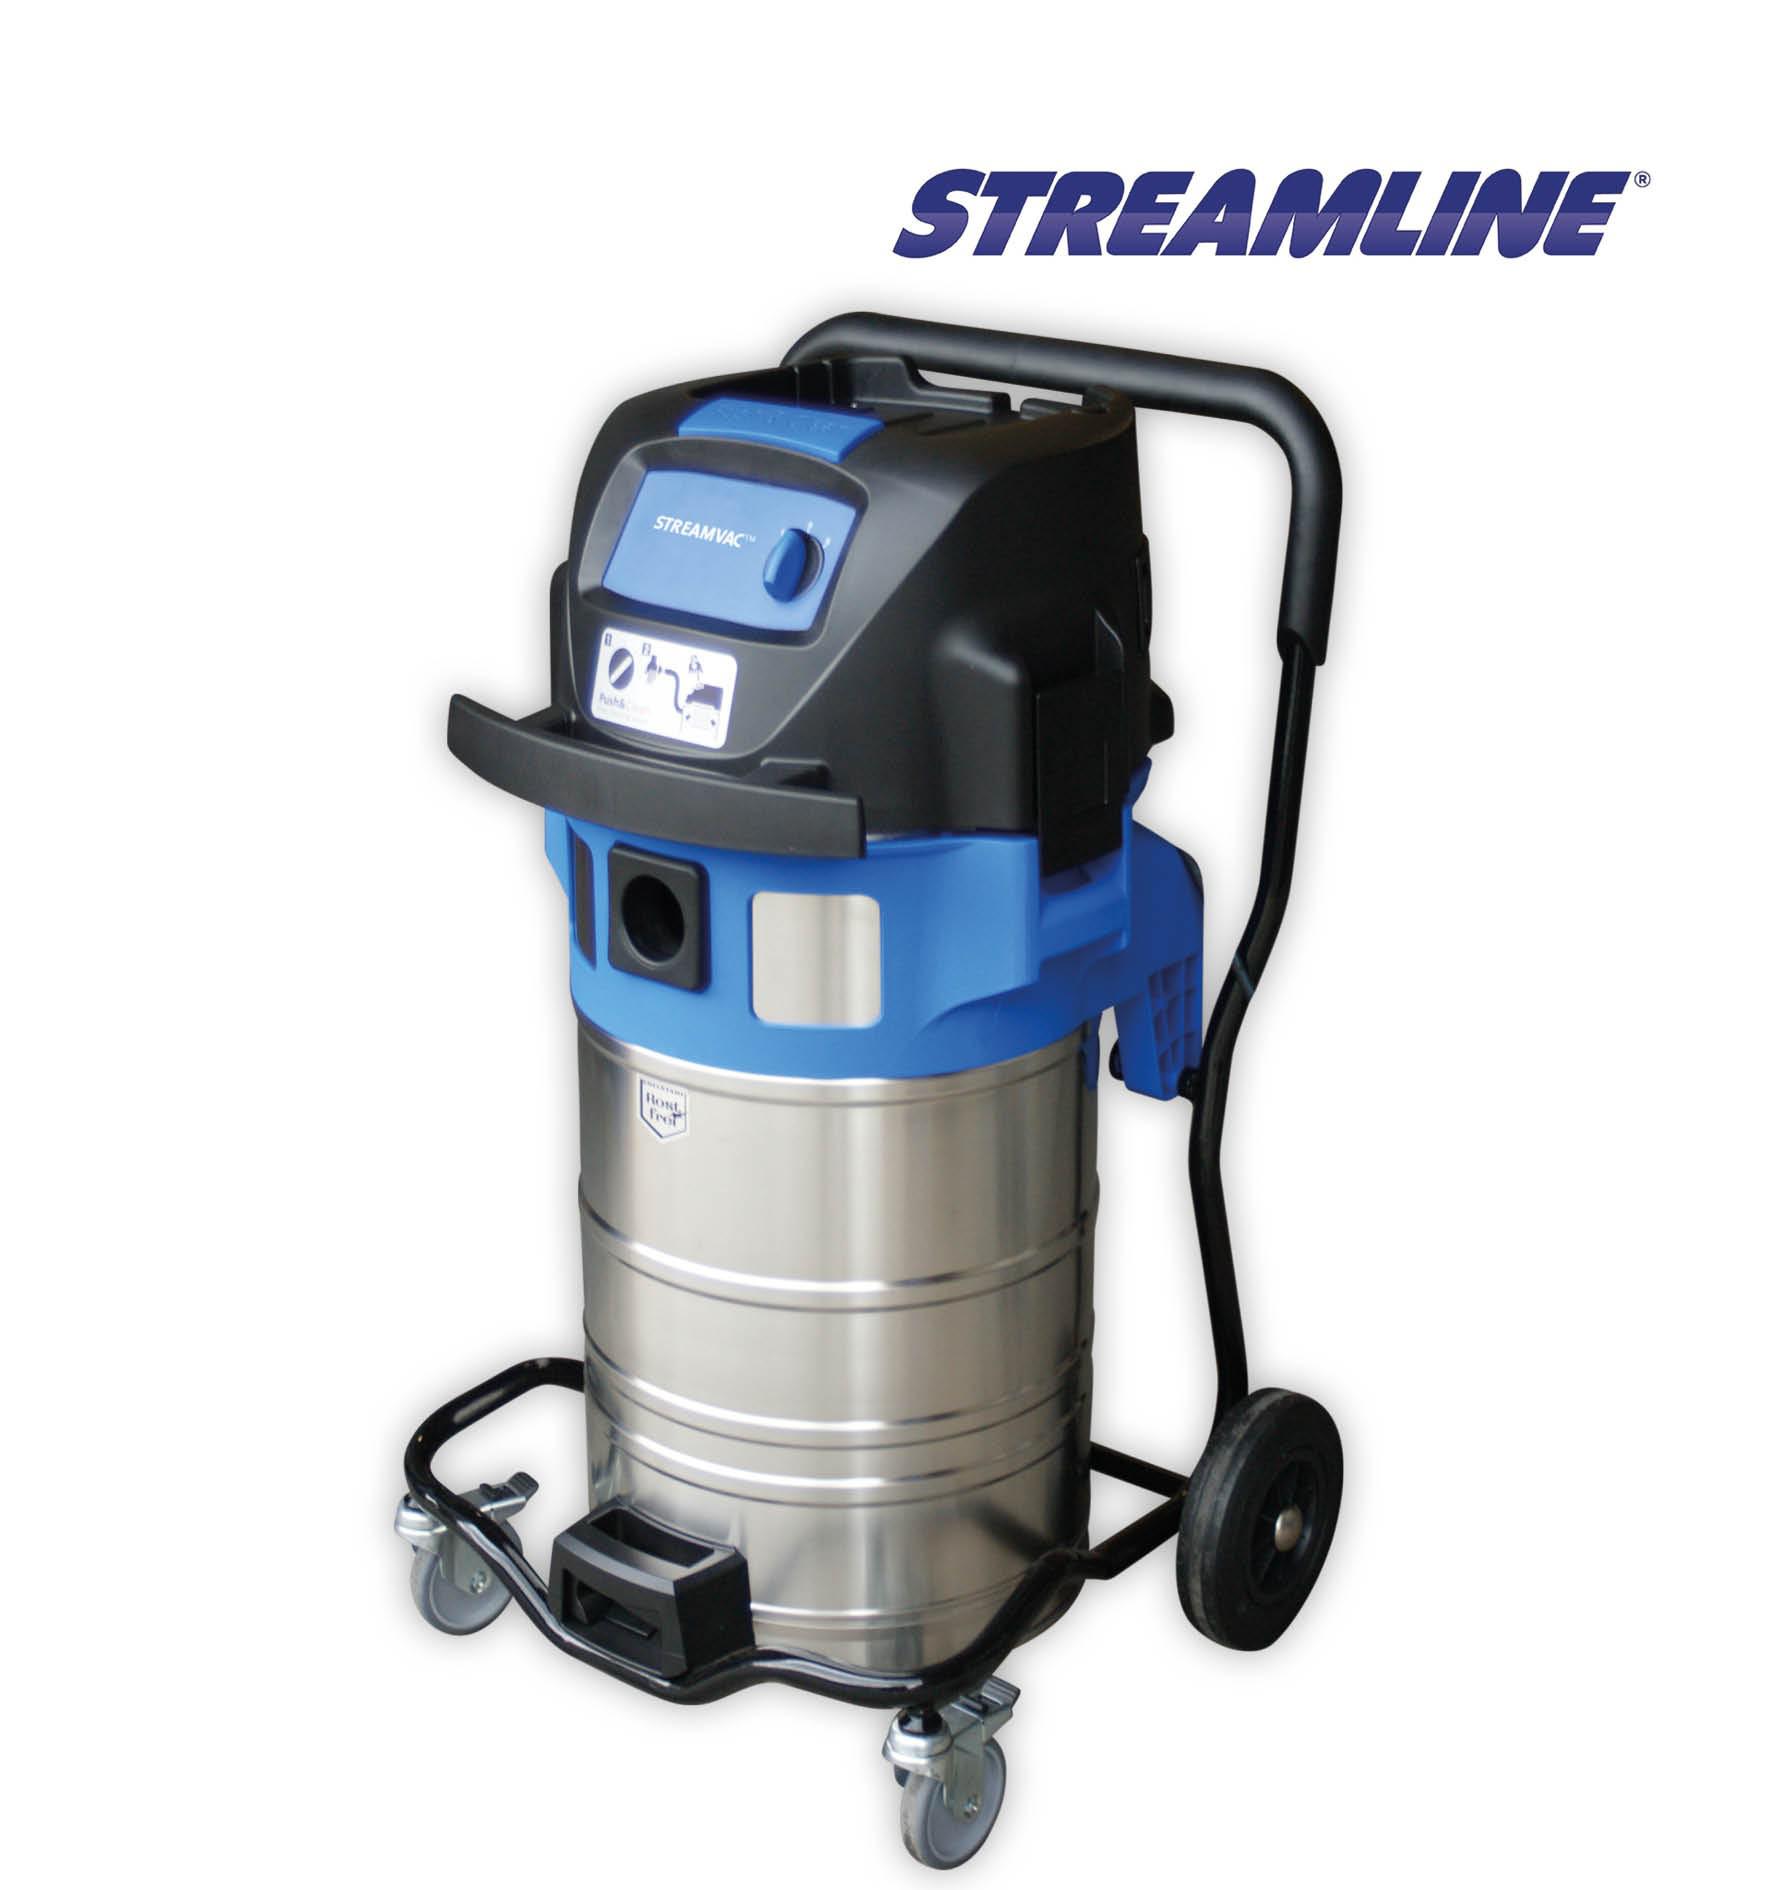 Streamline StreamVac Gutter Cleaner